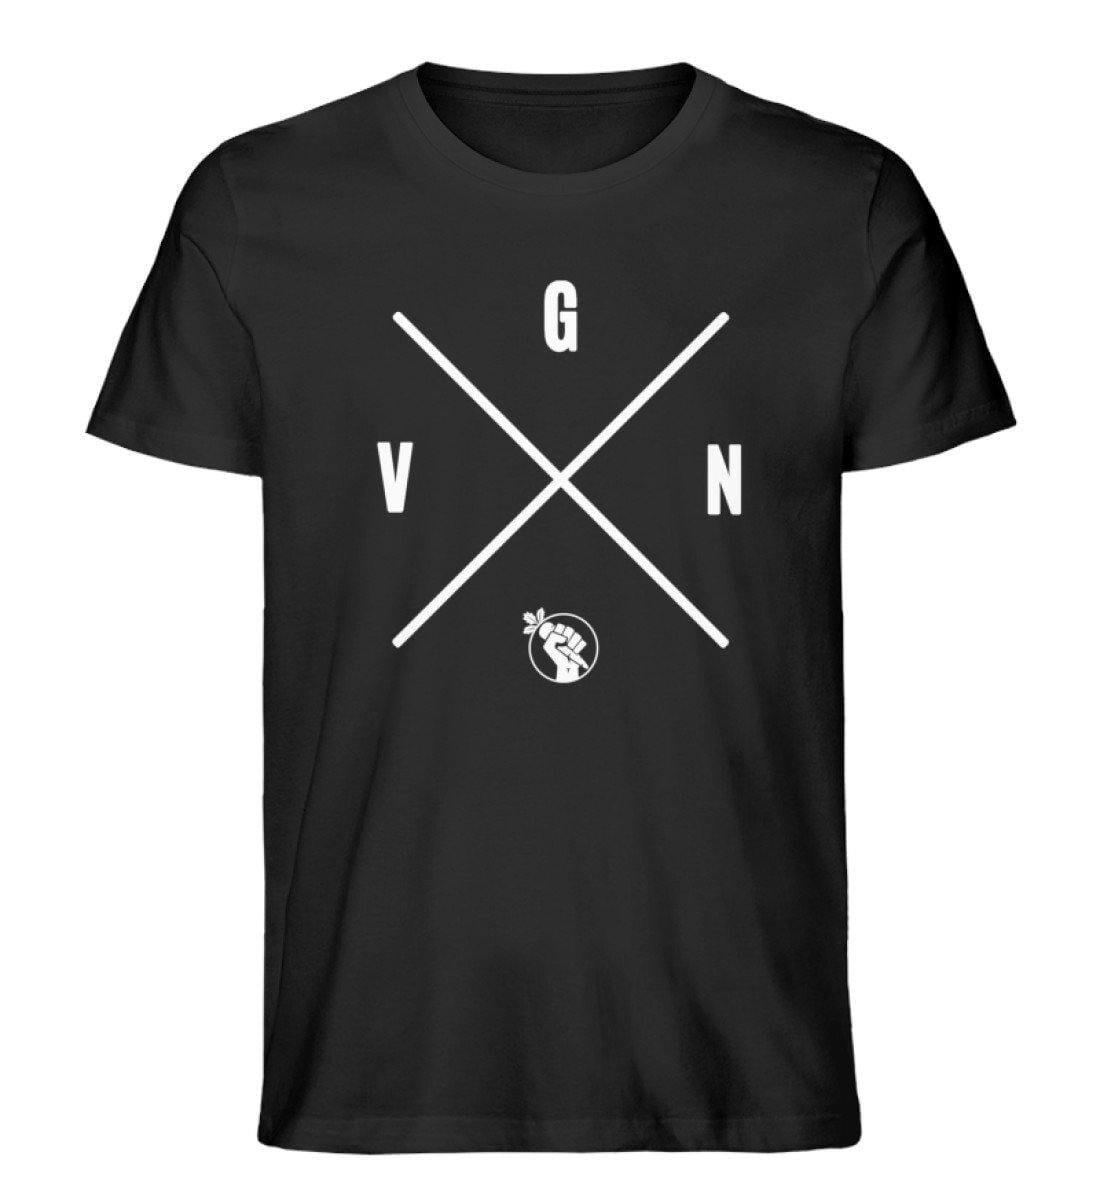 VGN - Unisex Organic Shirt - S